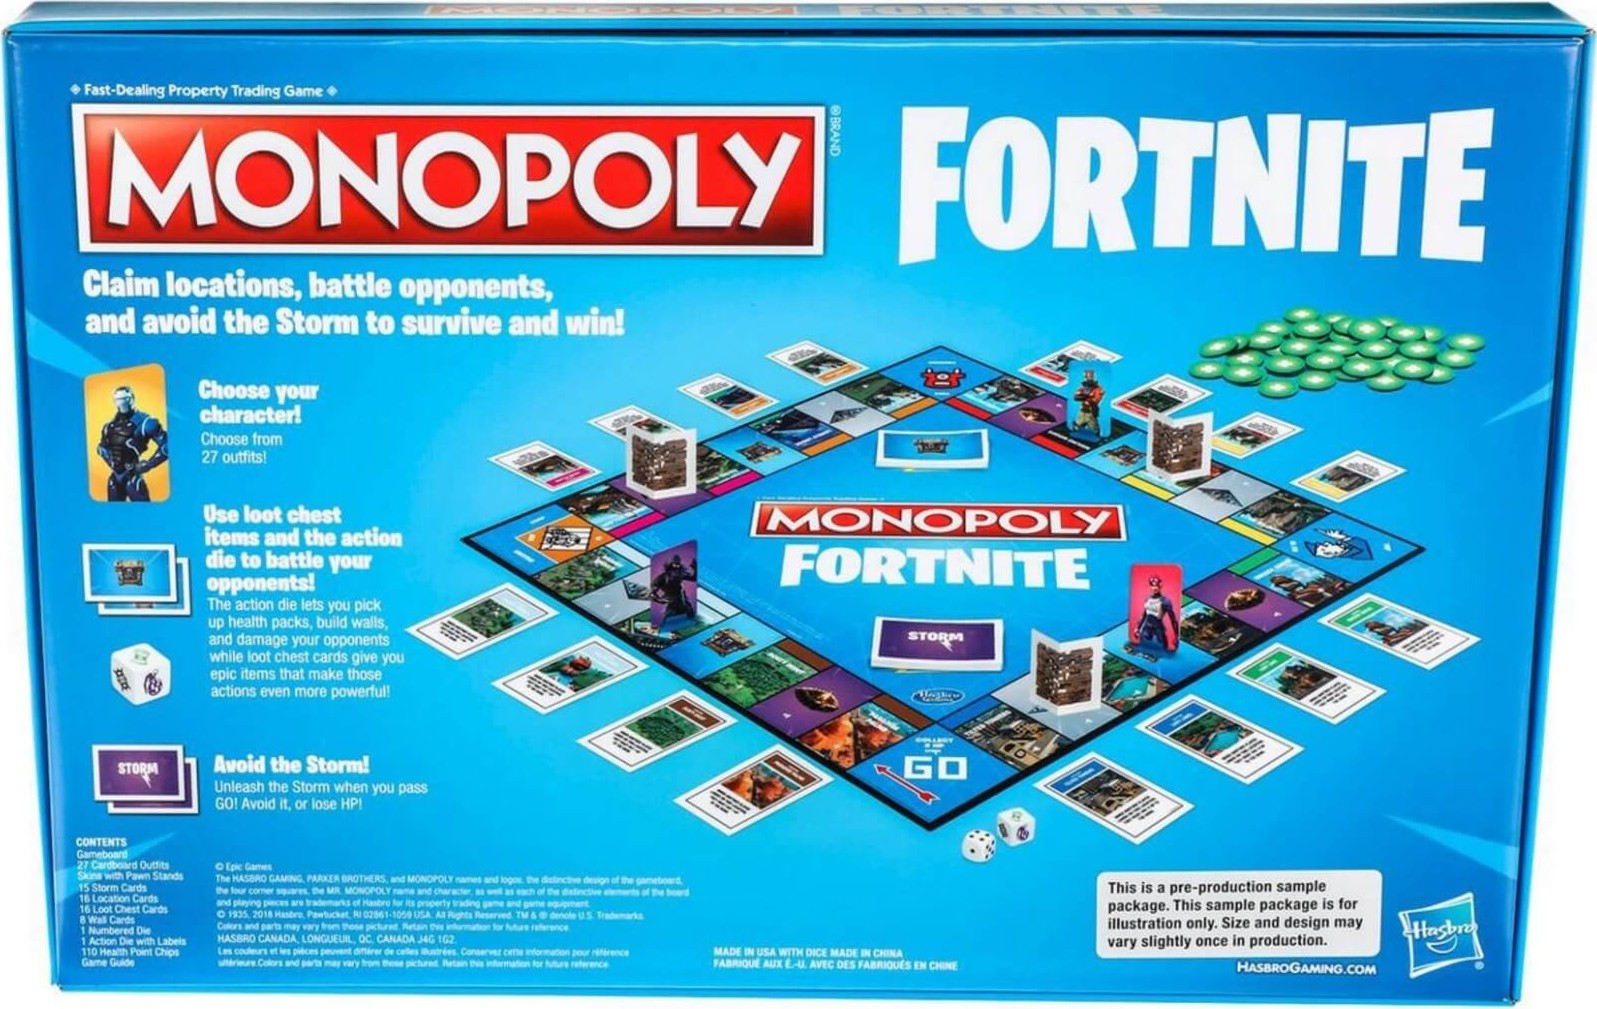 https://www.monopolypedia.fr/editions/derives/fortnite/monopoly-fortnite-dos.jpg